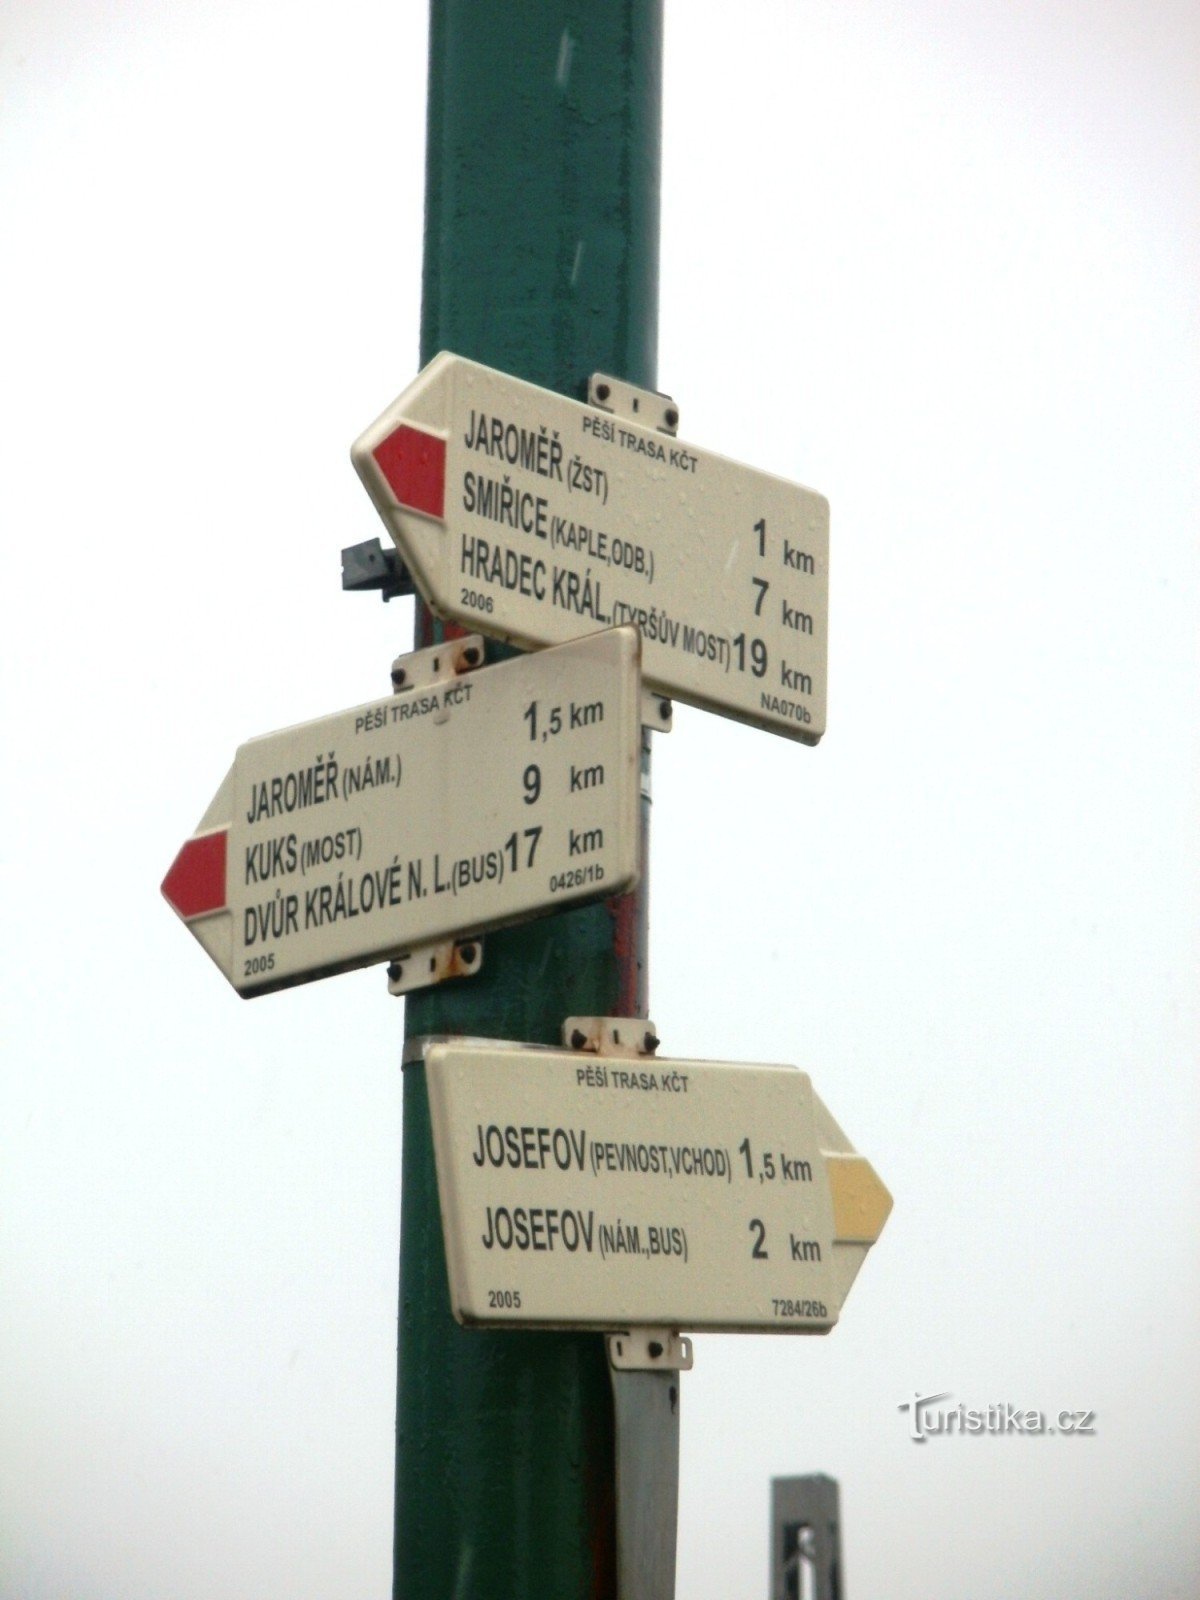 răscruce turistică Jaroměř - la trecerea de cale ferată